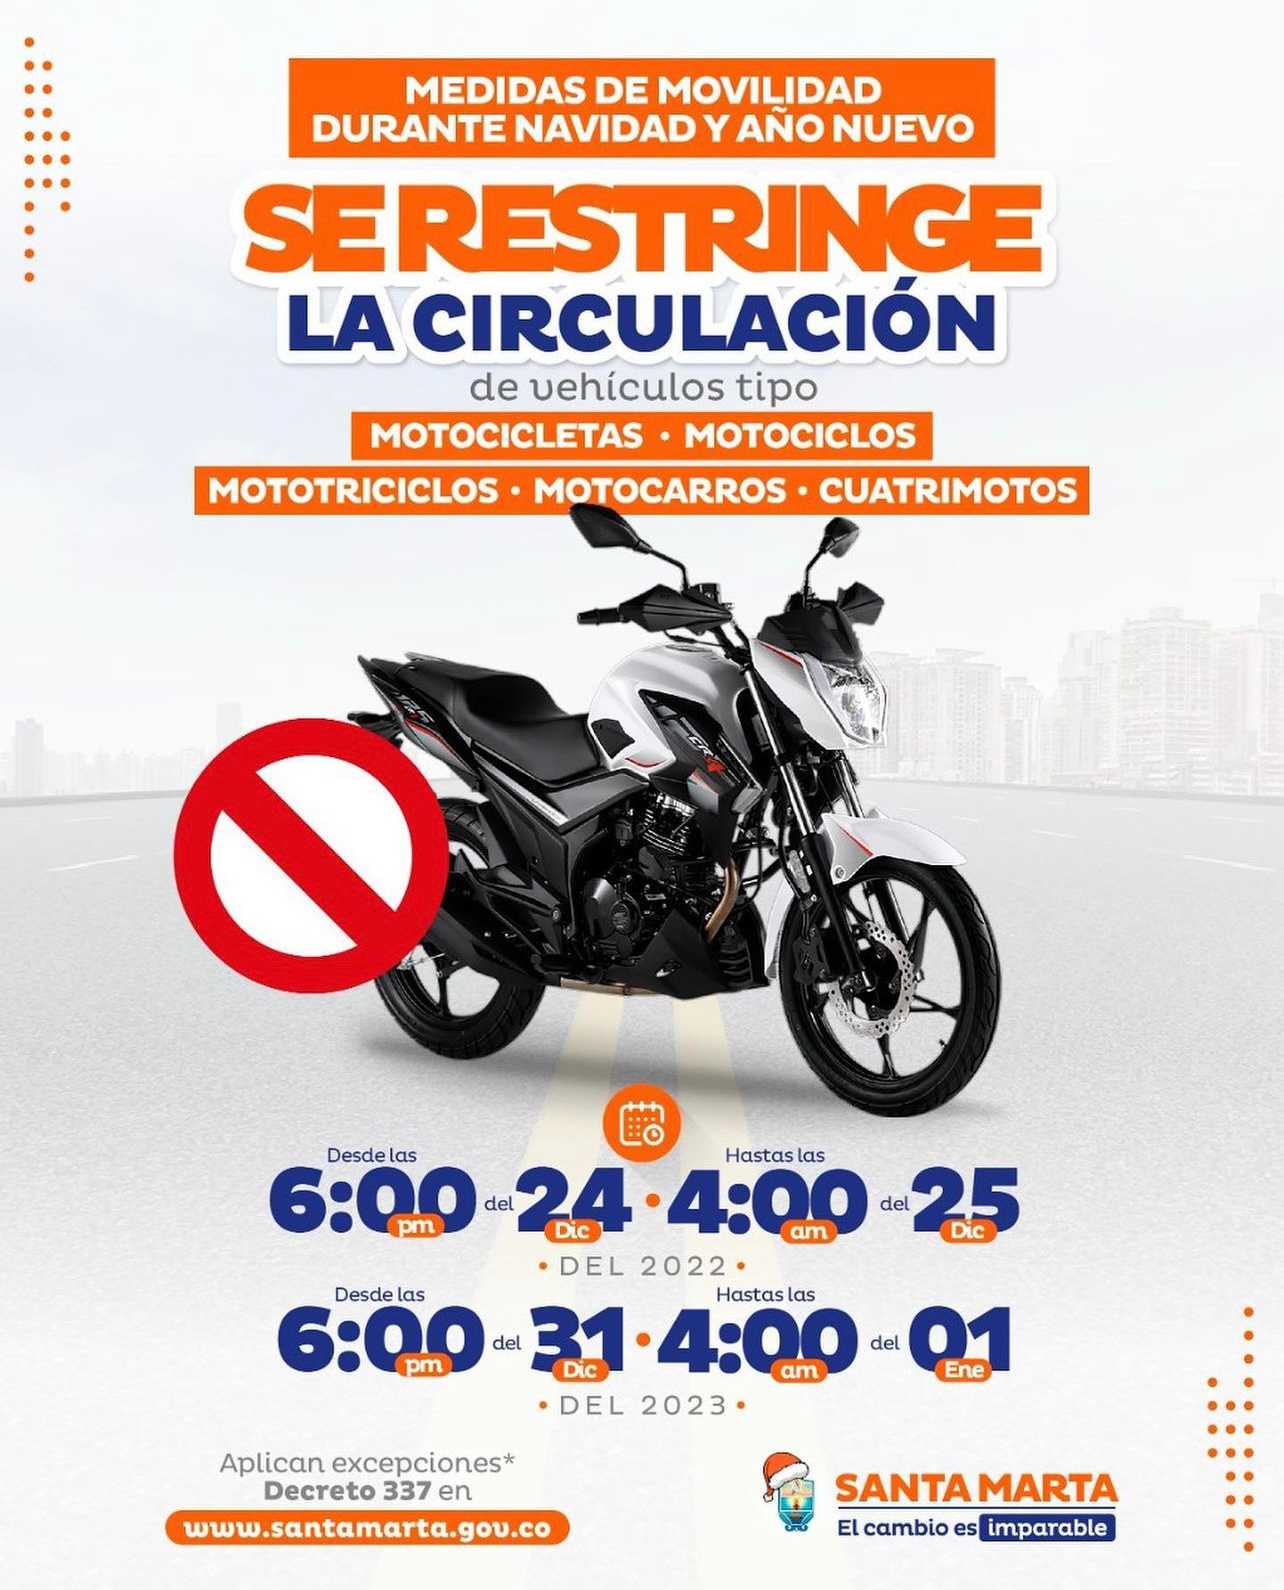 ¡Atención samario! Desde las 6:00 pm hasta las 4:00 am restricción de motocicletas en la ciudad